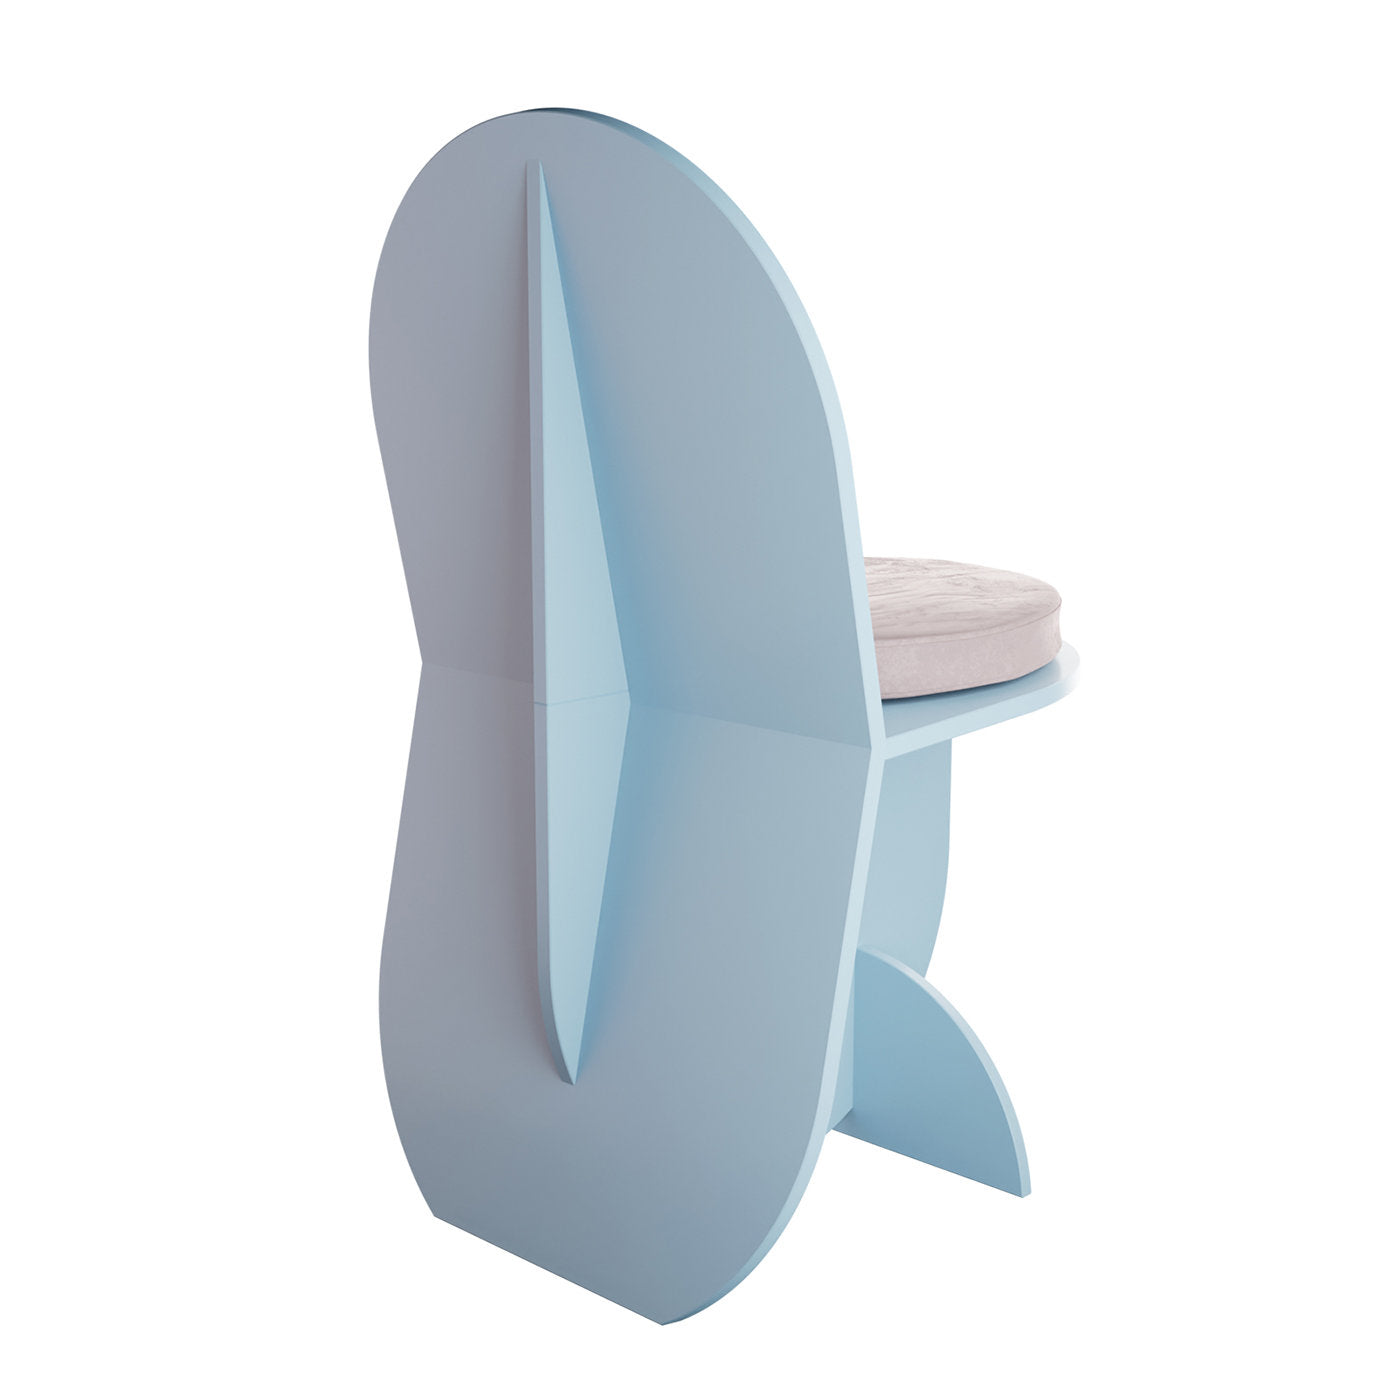 F4 TT05 Light-Blue Chair - Alternative view 3